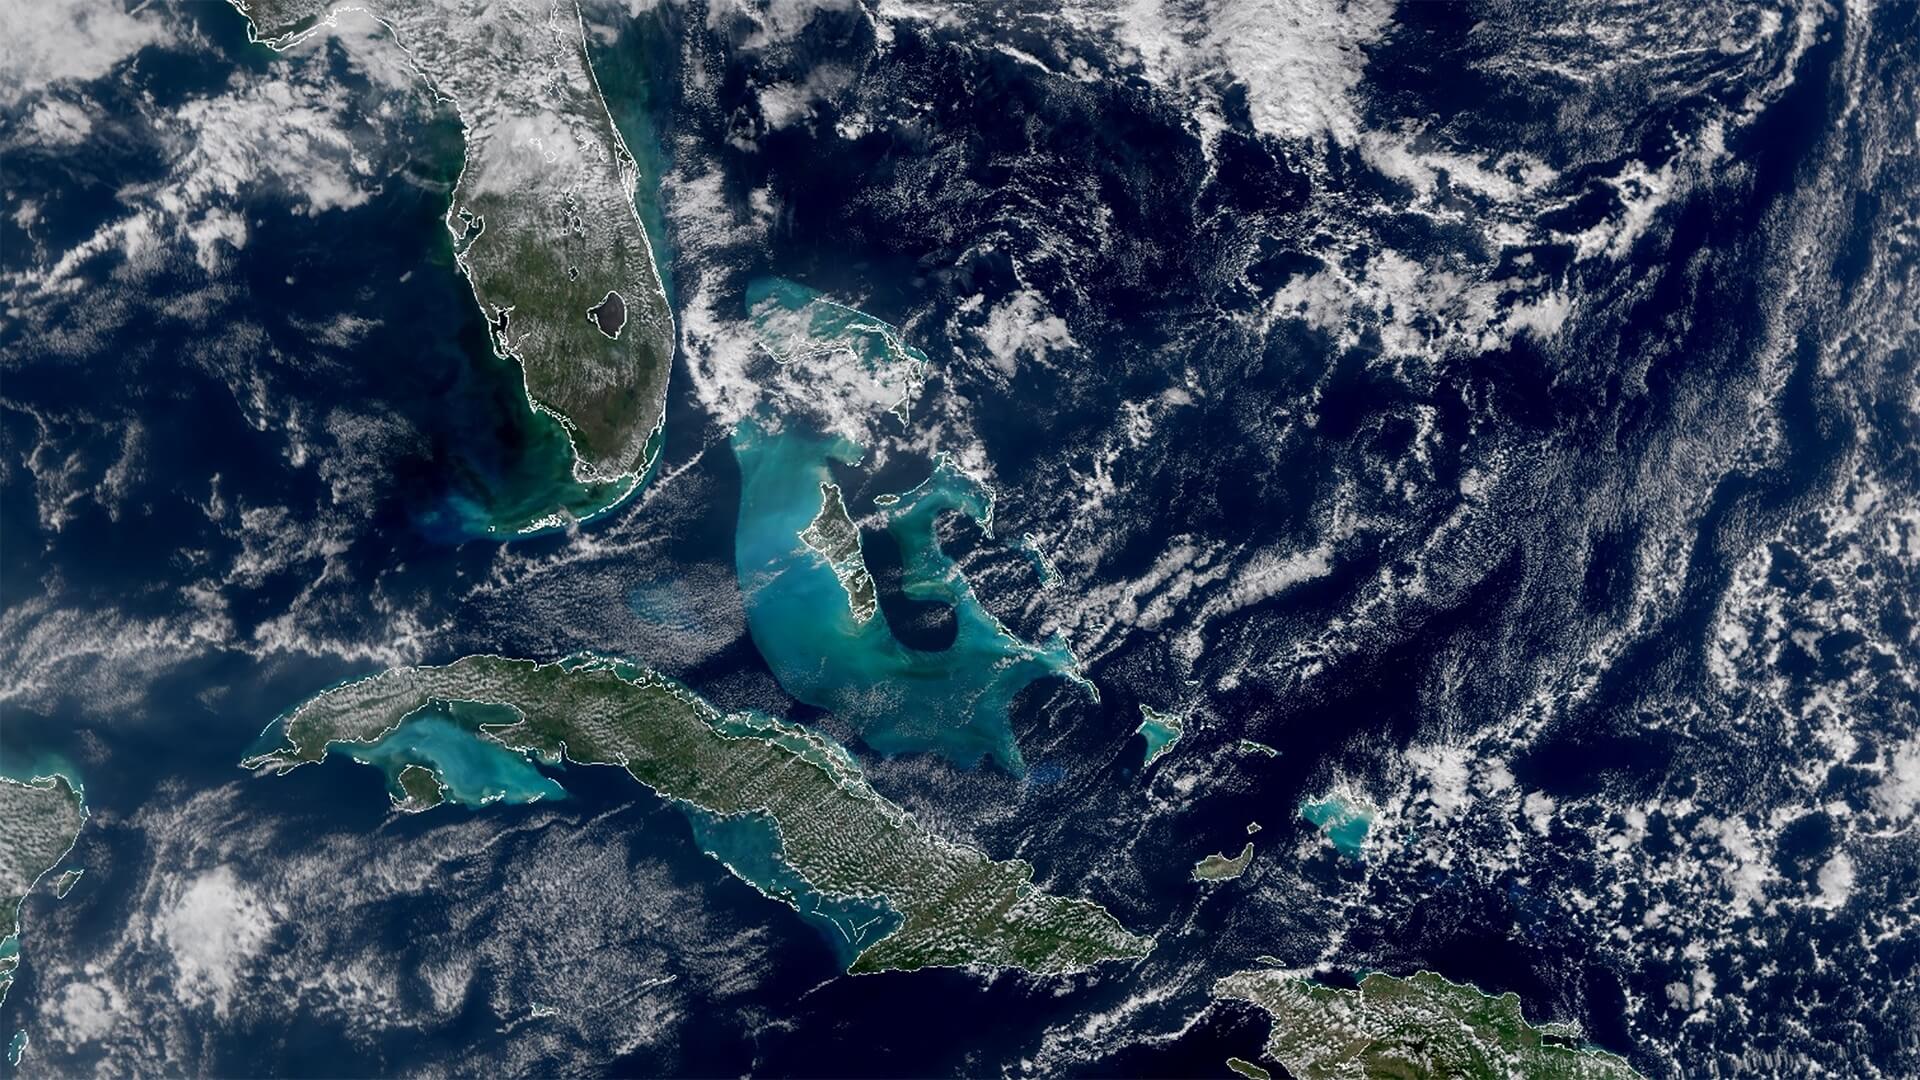 Фотографии Земли из космоса в 2022 году. Бирюзовые воды Карибского бассейна. Фото.